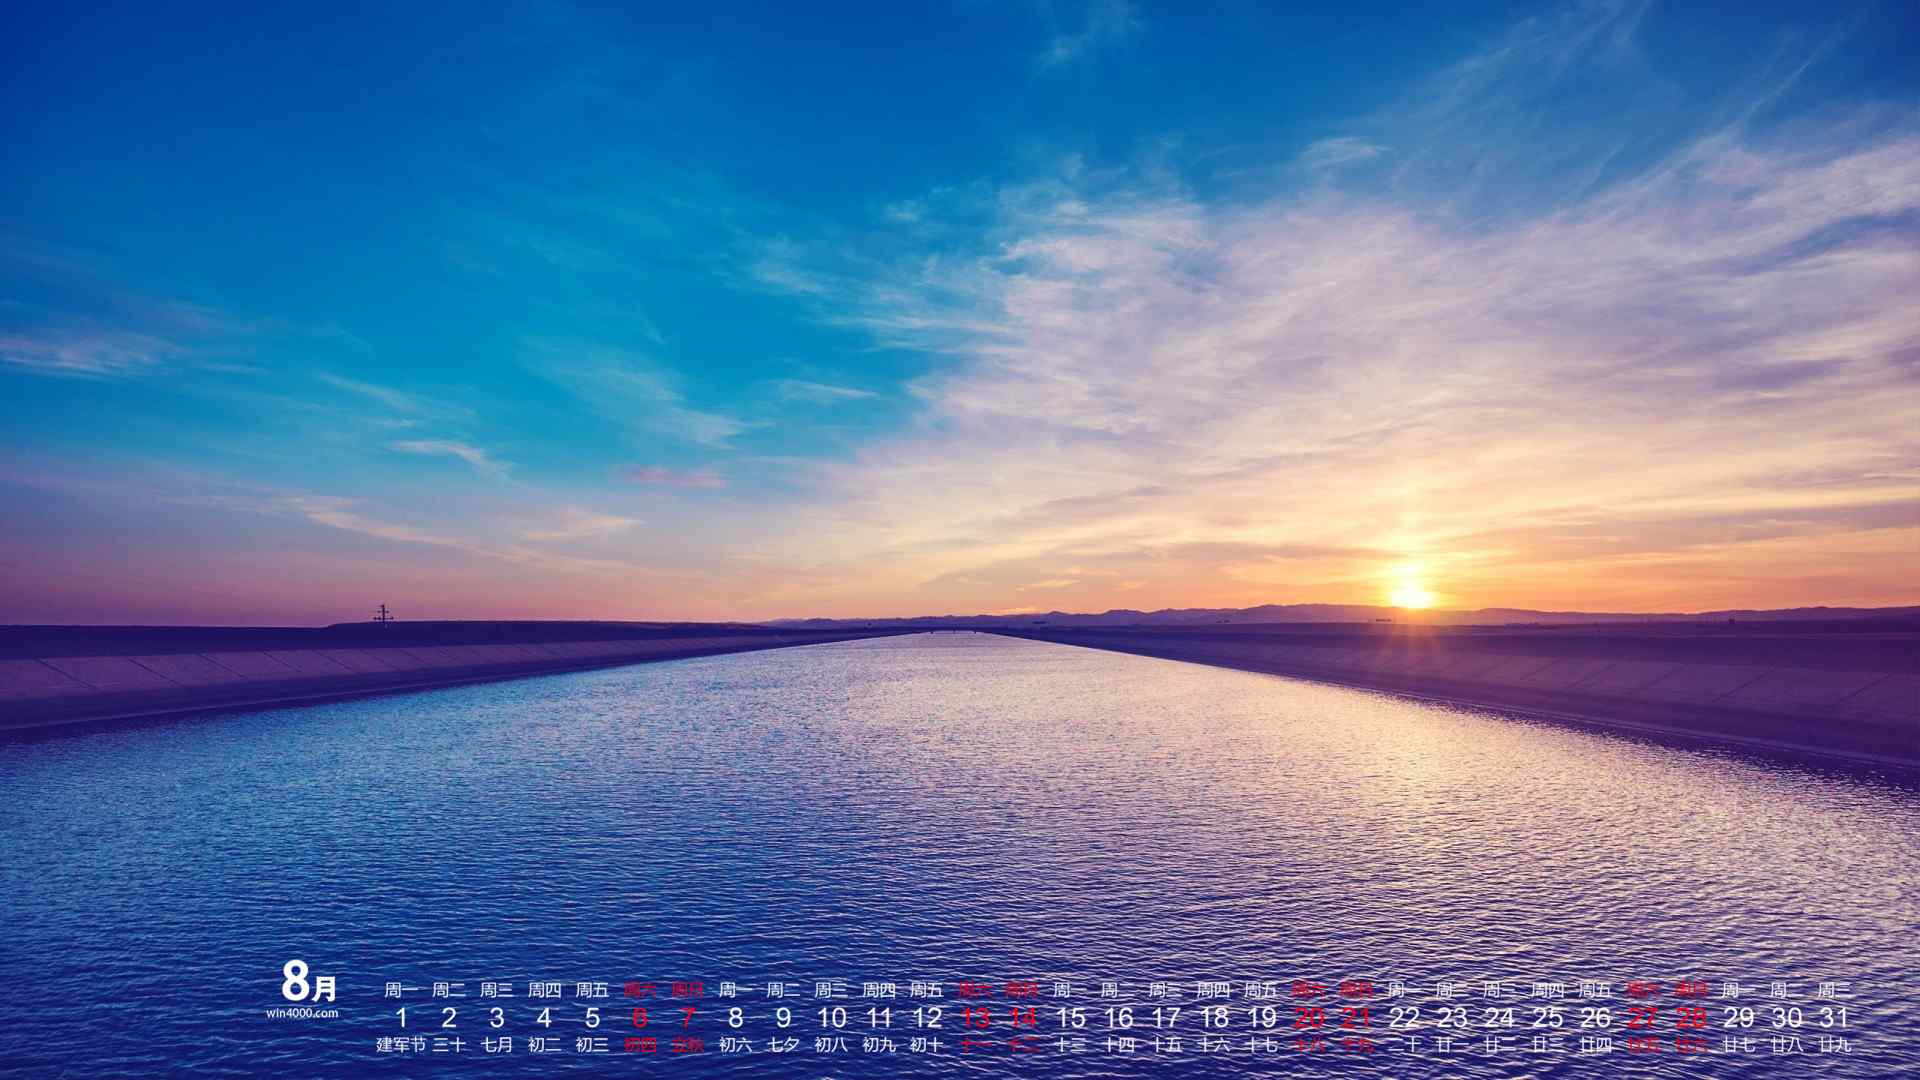 2016年8月日历精选美丽风景高清电脑桌面壁纸下载